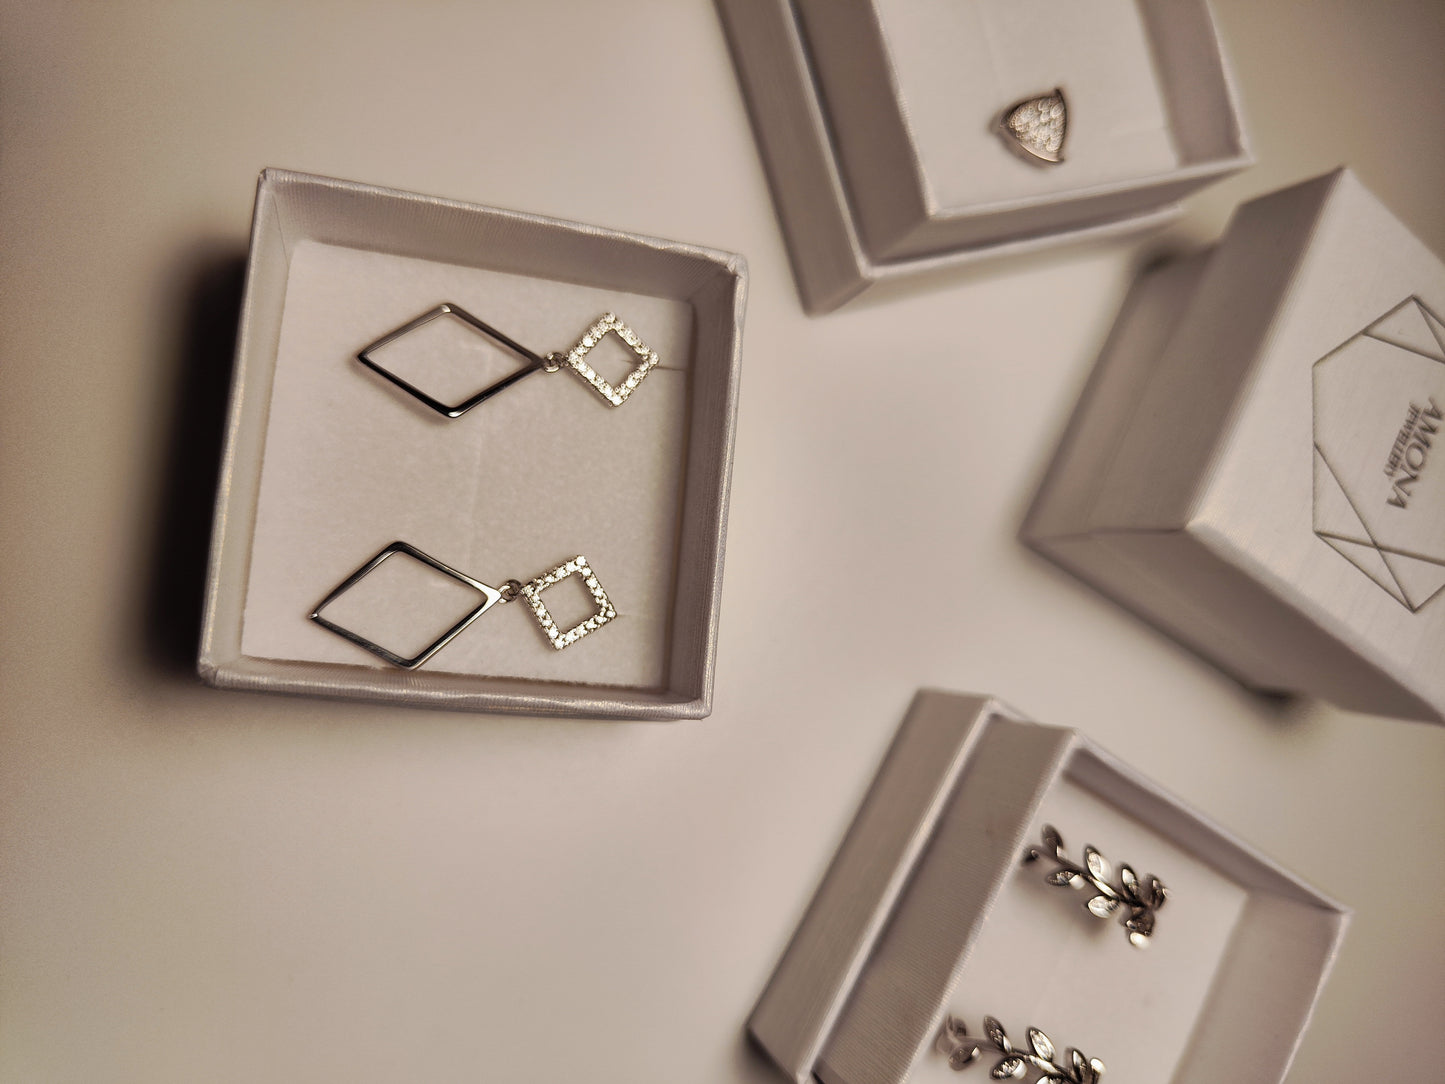 Sterling Silver Dangle Earrings - Amona Jewelry